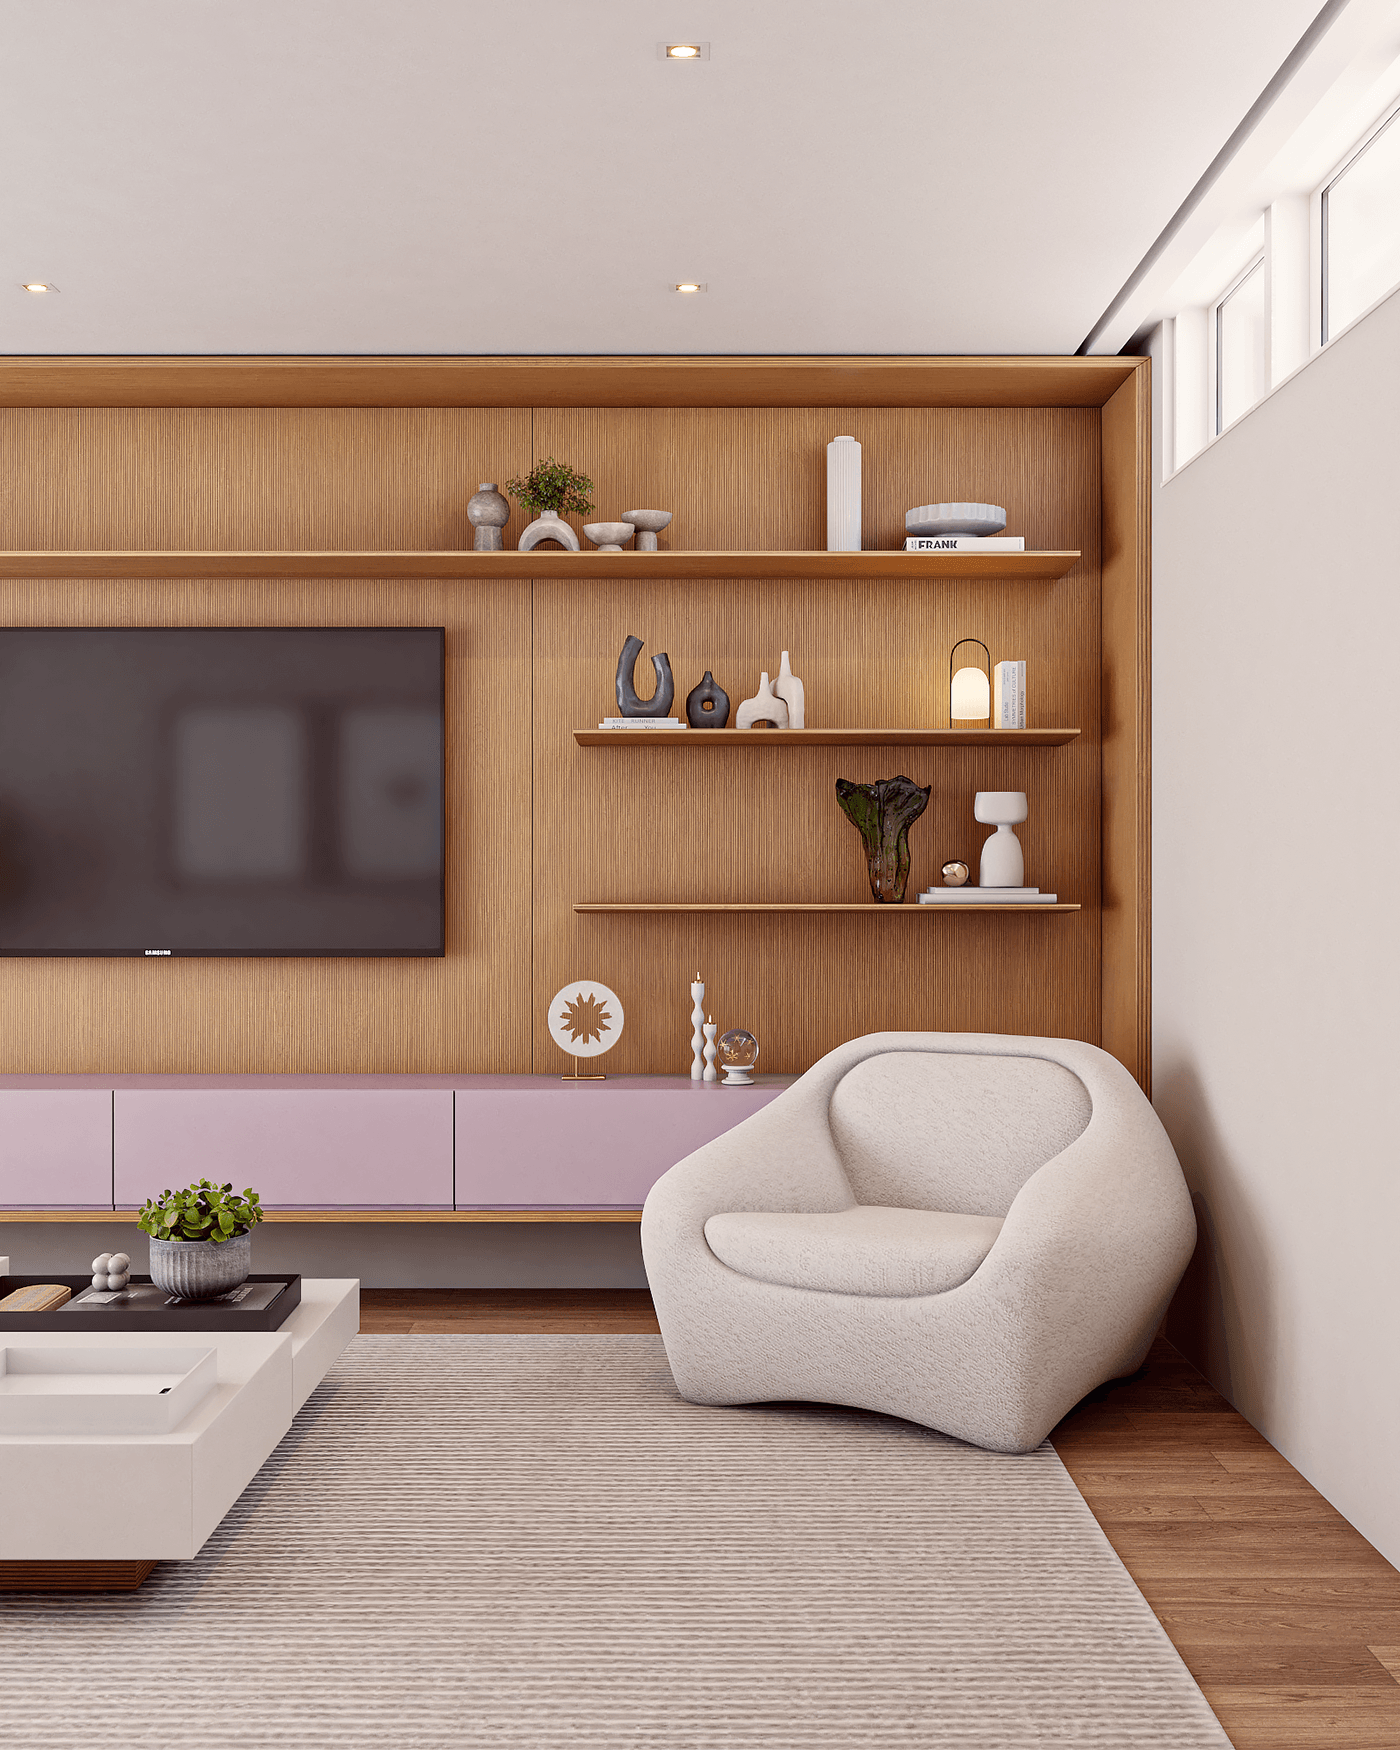 living room living room design livingroomdesign livingroom interior design  Render vray 3ds max corona archviz